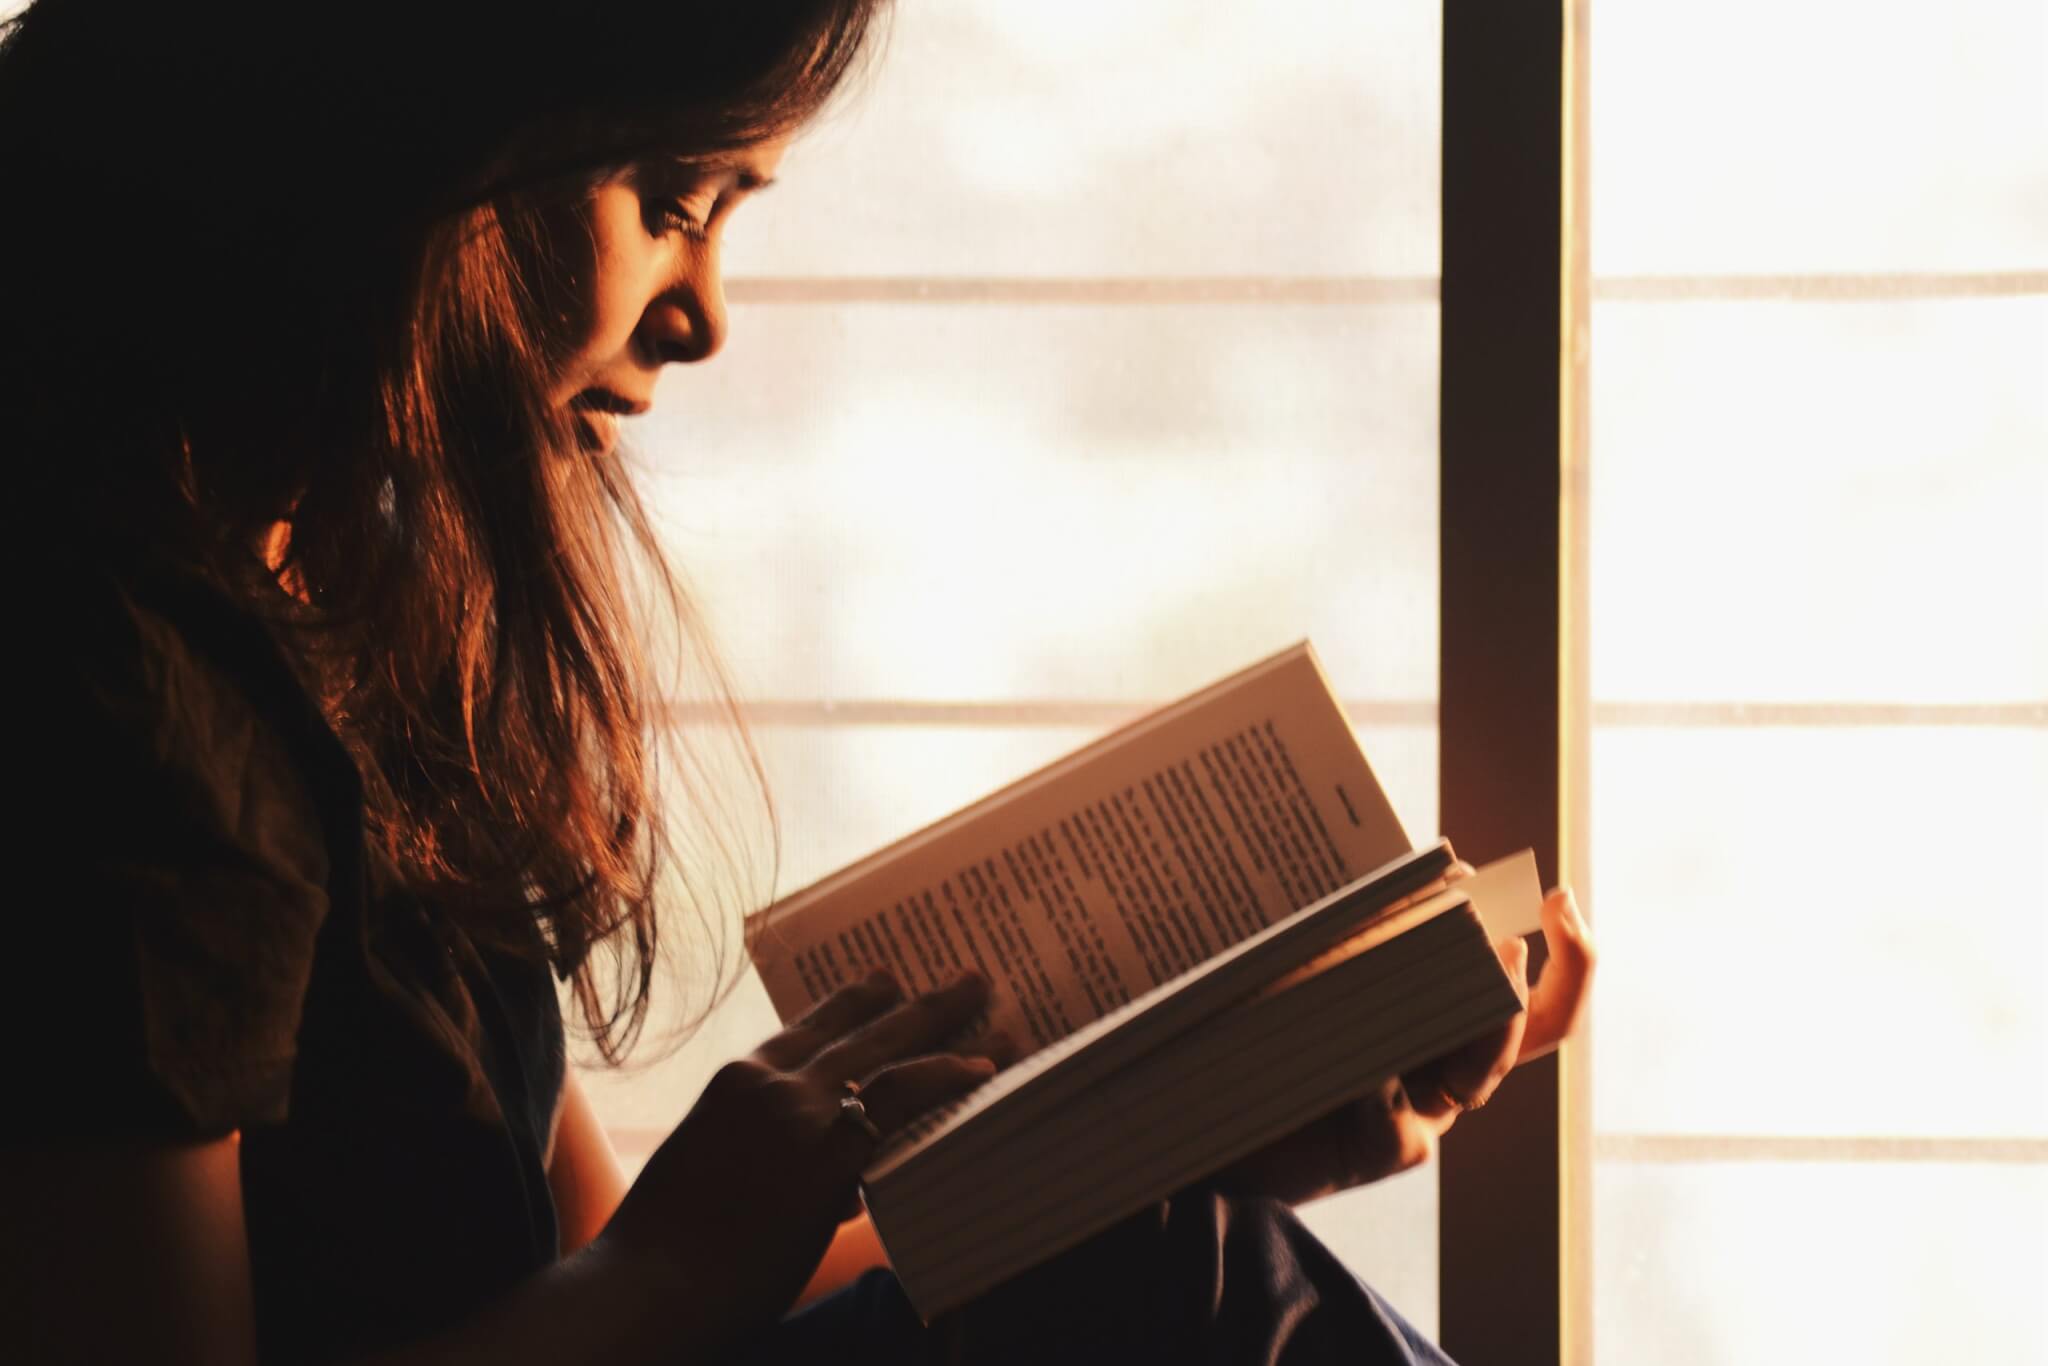 Meilleurs livres de Colleen Hoover : Top 5 des romans les plus recommandés  par les experts - Study Finds